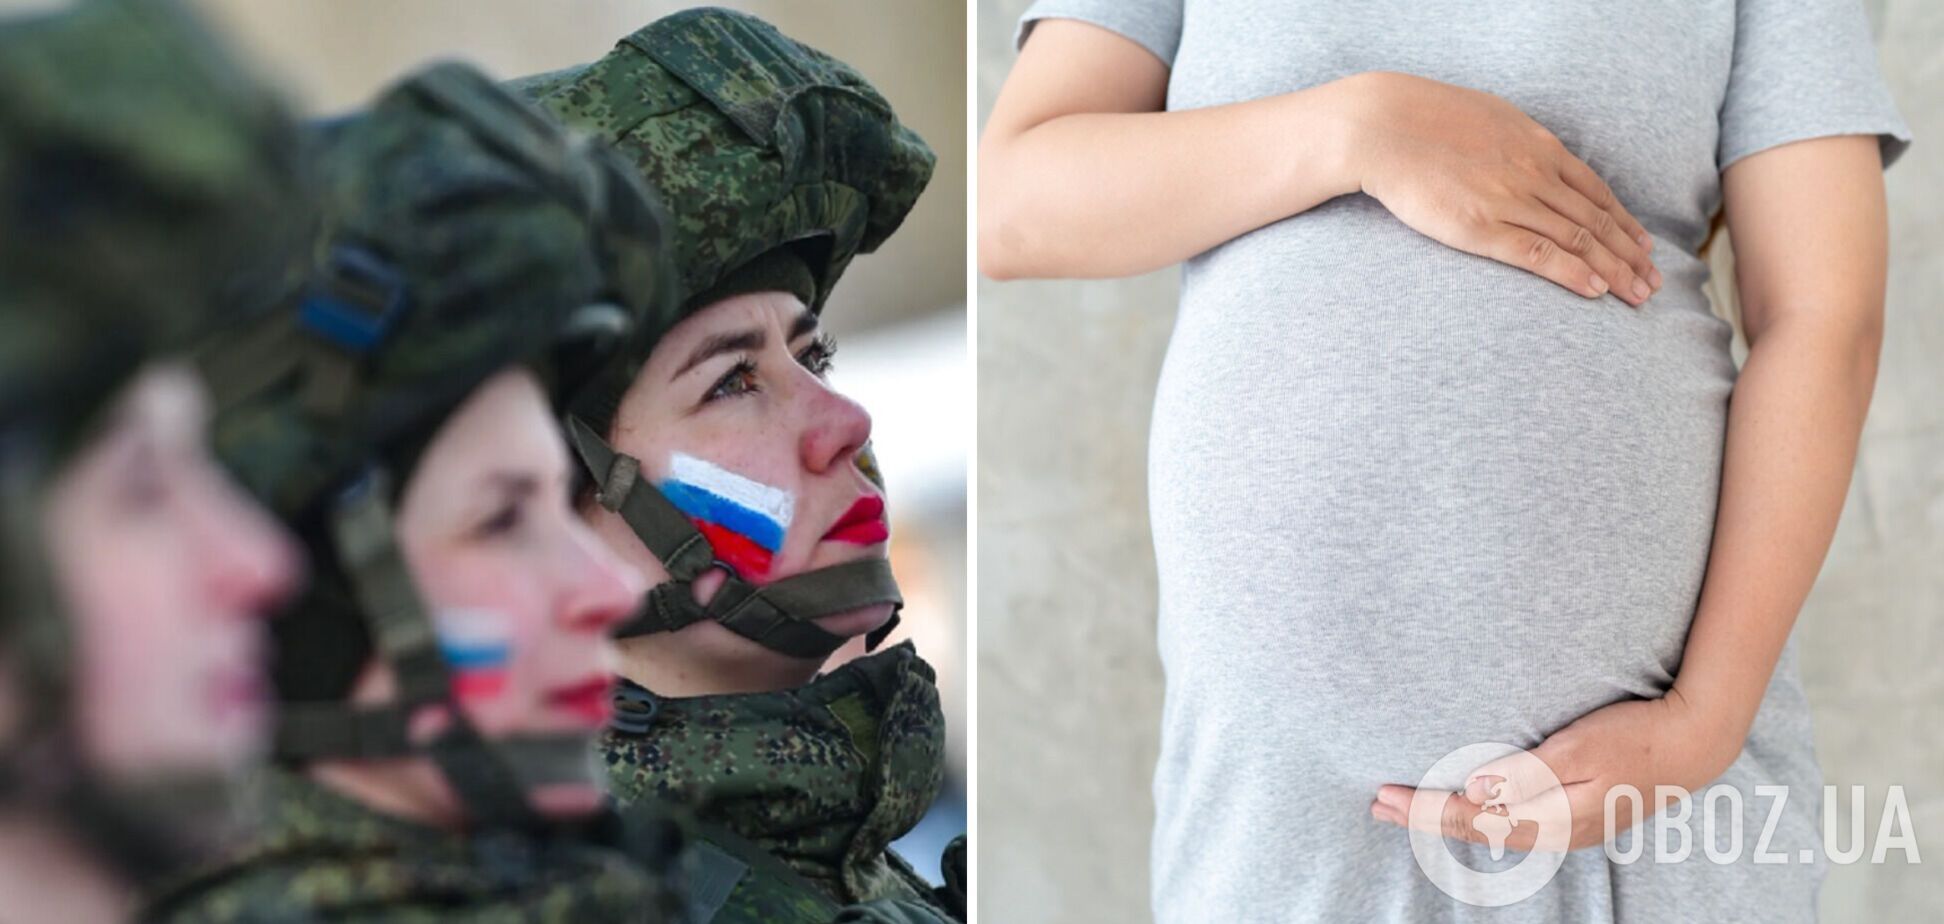 Суд в России над женщиной-военнослужащей